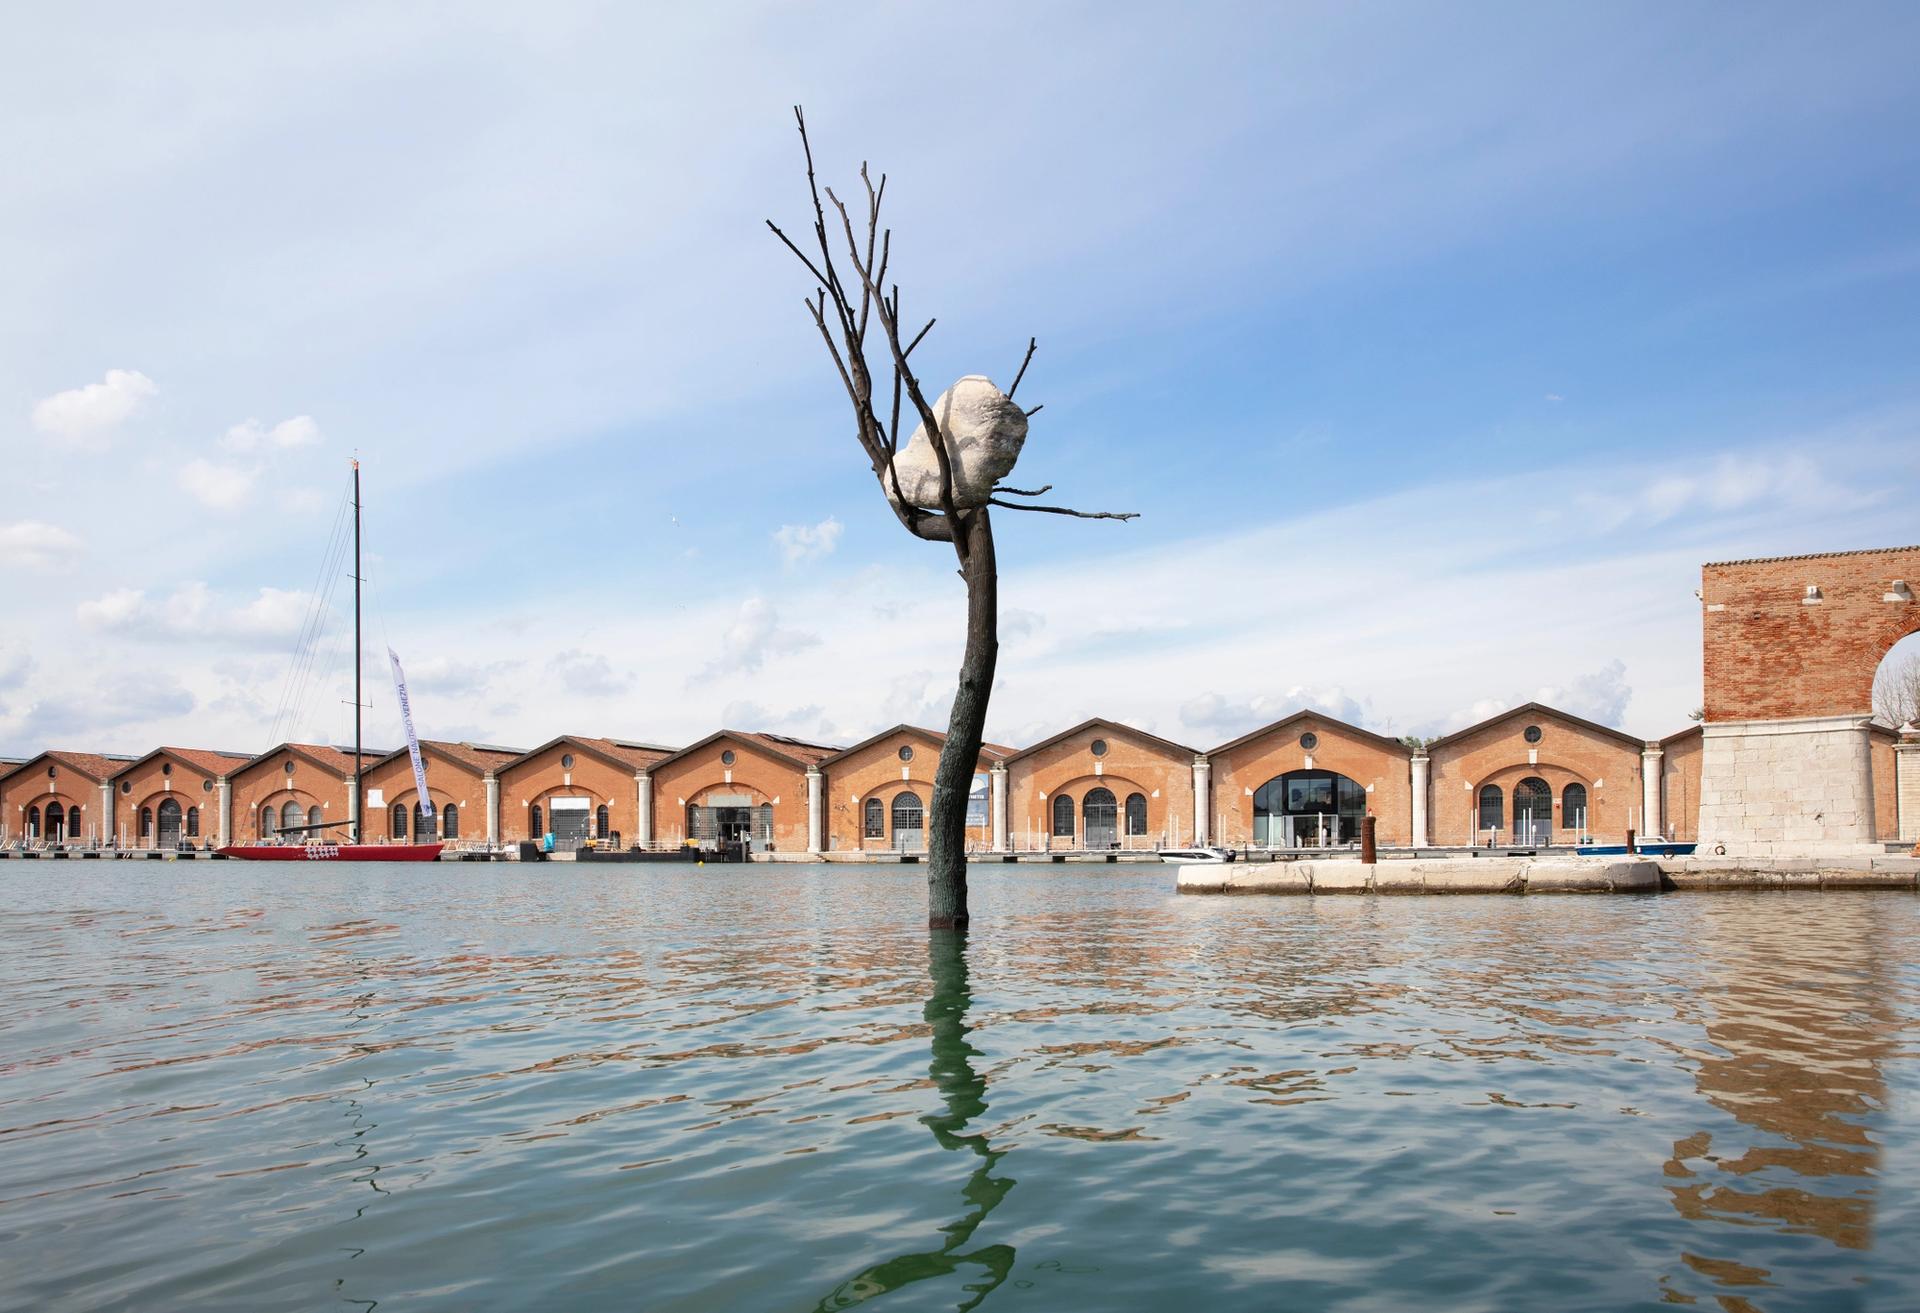 Giuseppe Penone's The Listener installation on view at the 17th International Architecture Exhibition - La Biennale di Venezia 2021. © Photo: Sebastiano Pellion di Persano. Courtesy of Vuslat Foundation and Giuseppe Penone